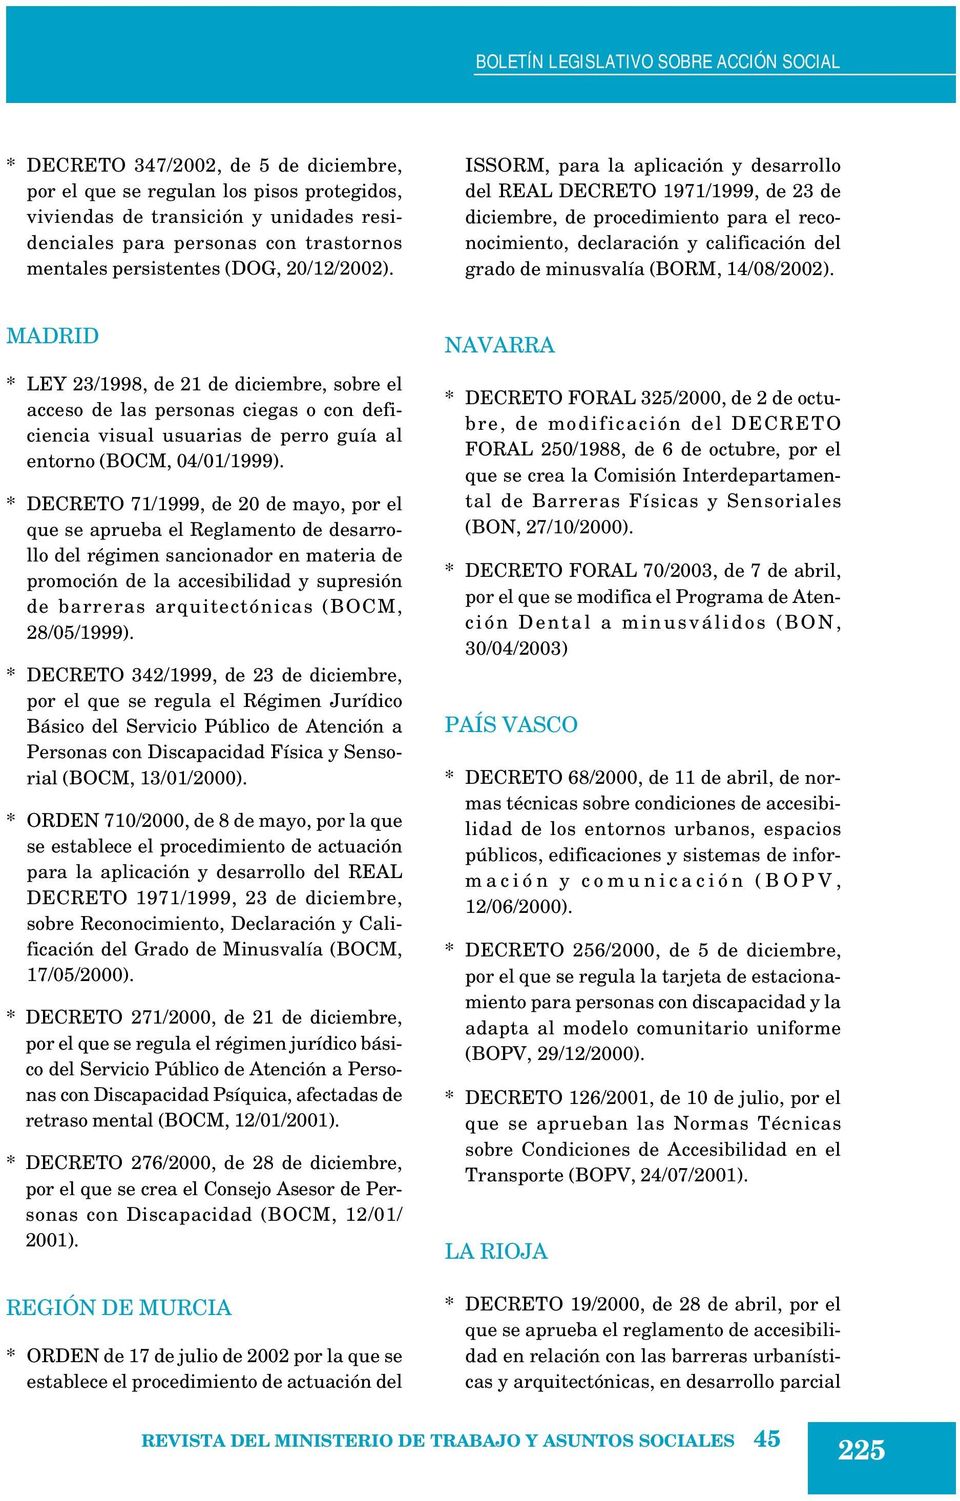 MADRID * LEY 23/1998, de 21 de diciembre, sobre el acceso de las personas ciegas o con deficiencia visual usuarias de perro guía al entorno (BOCM, 04/01/1999).